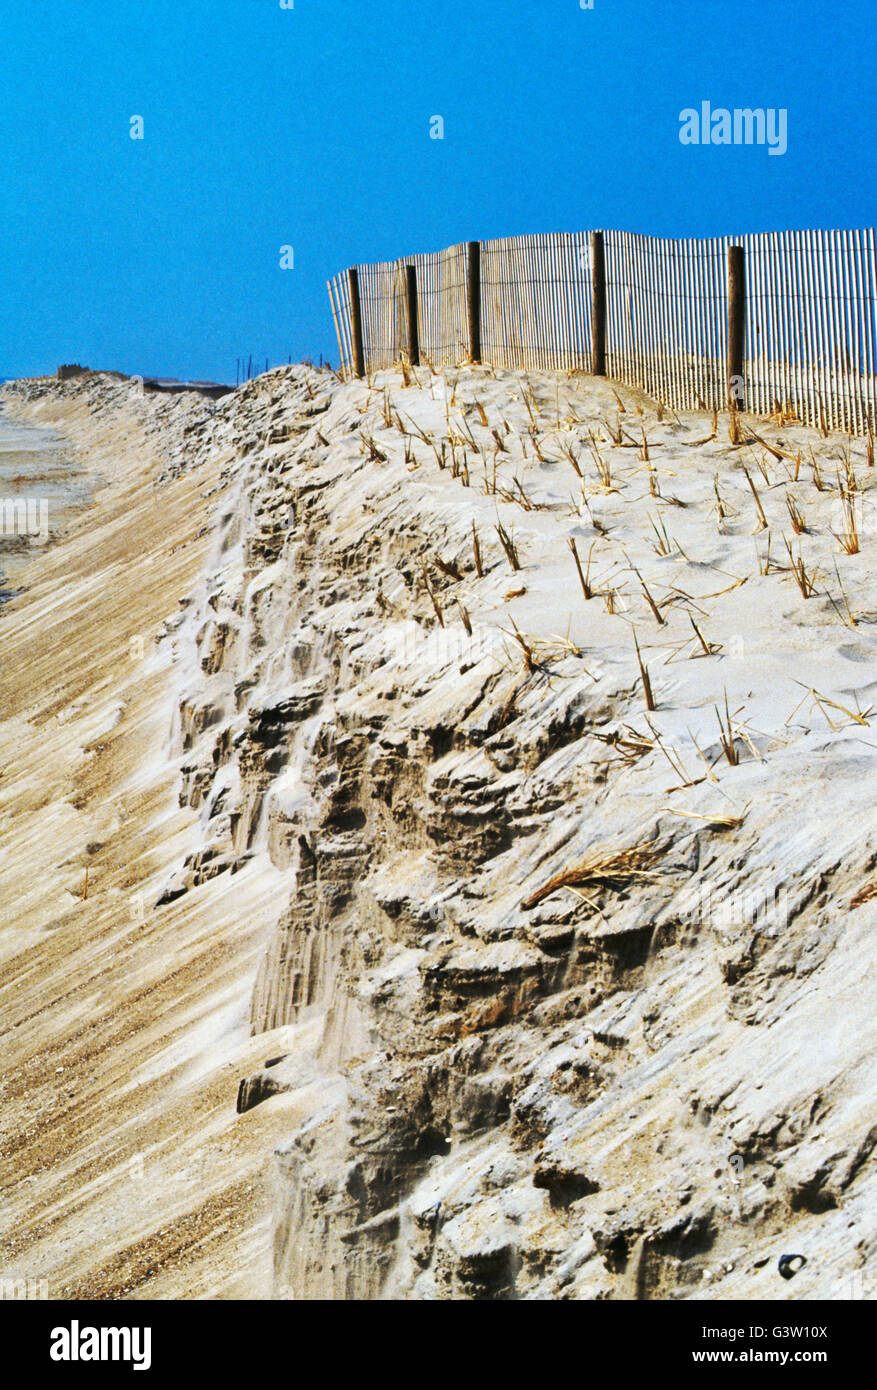 Barrière en bois ; sables de Assateague Beach, Chincoteague National Wildlife Refuge, Assateague Island, Virginia, USA Banque D'Images